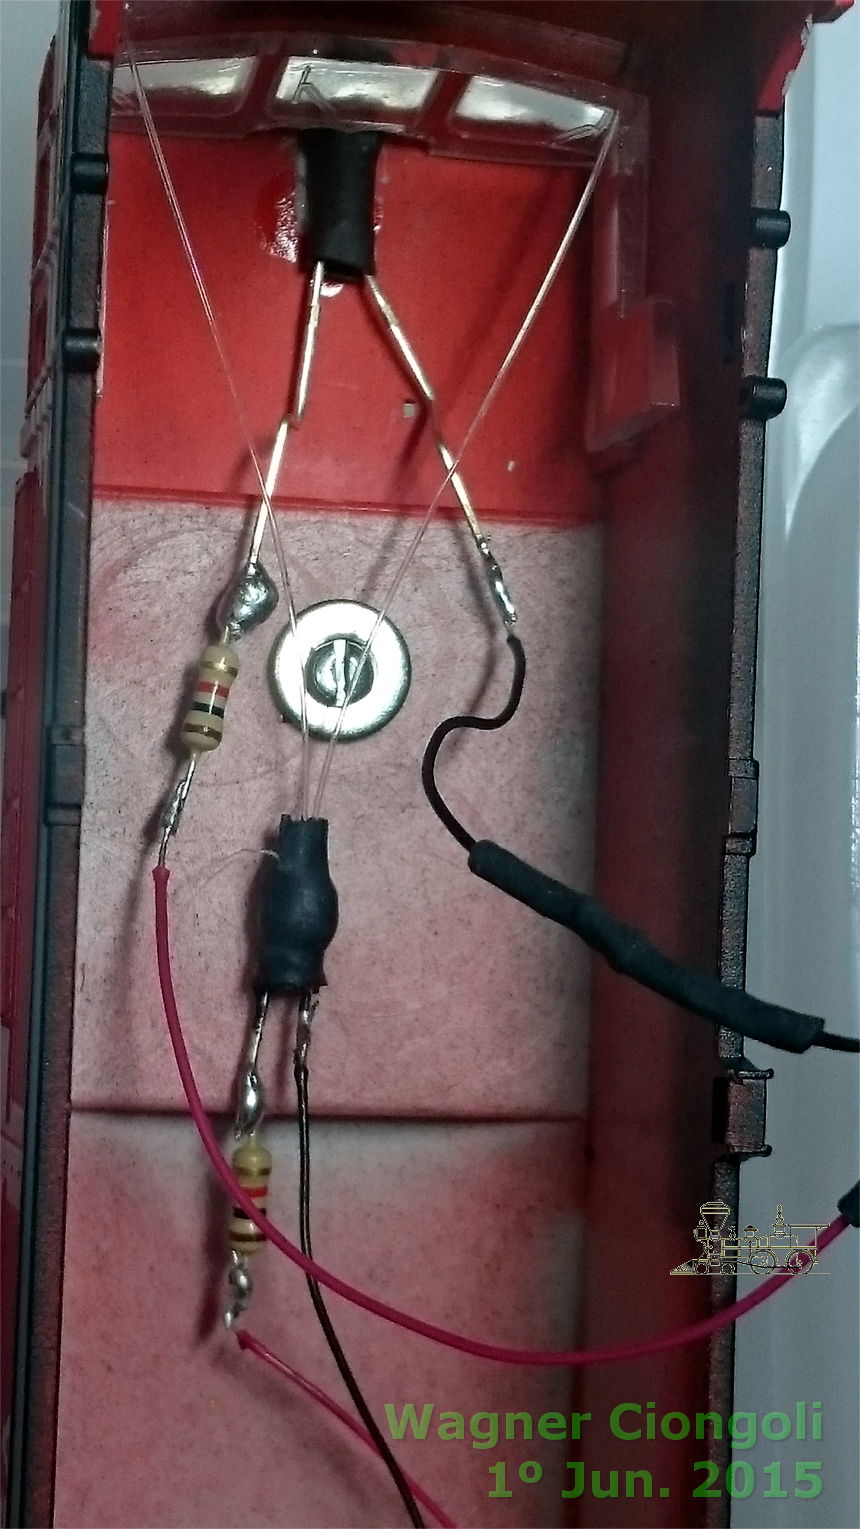 Ligações elétricas do conjunto LED - fibras óticas no interior da locomotiva Frateschi